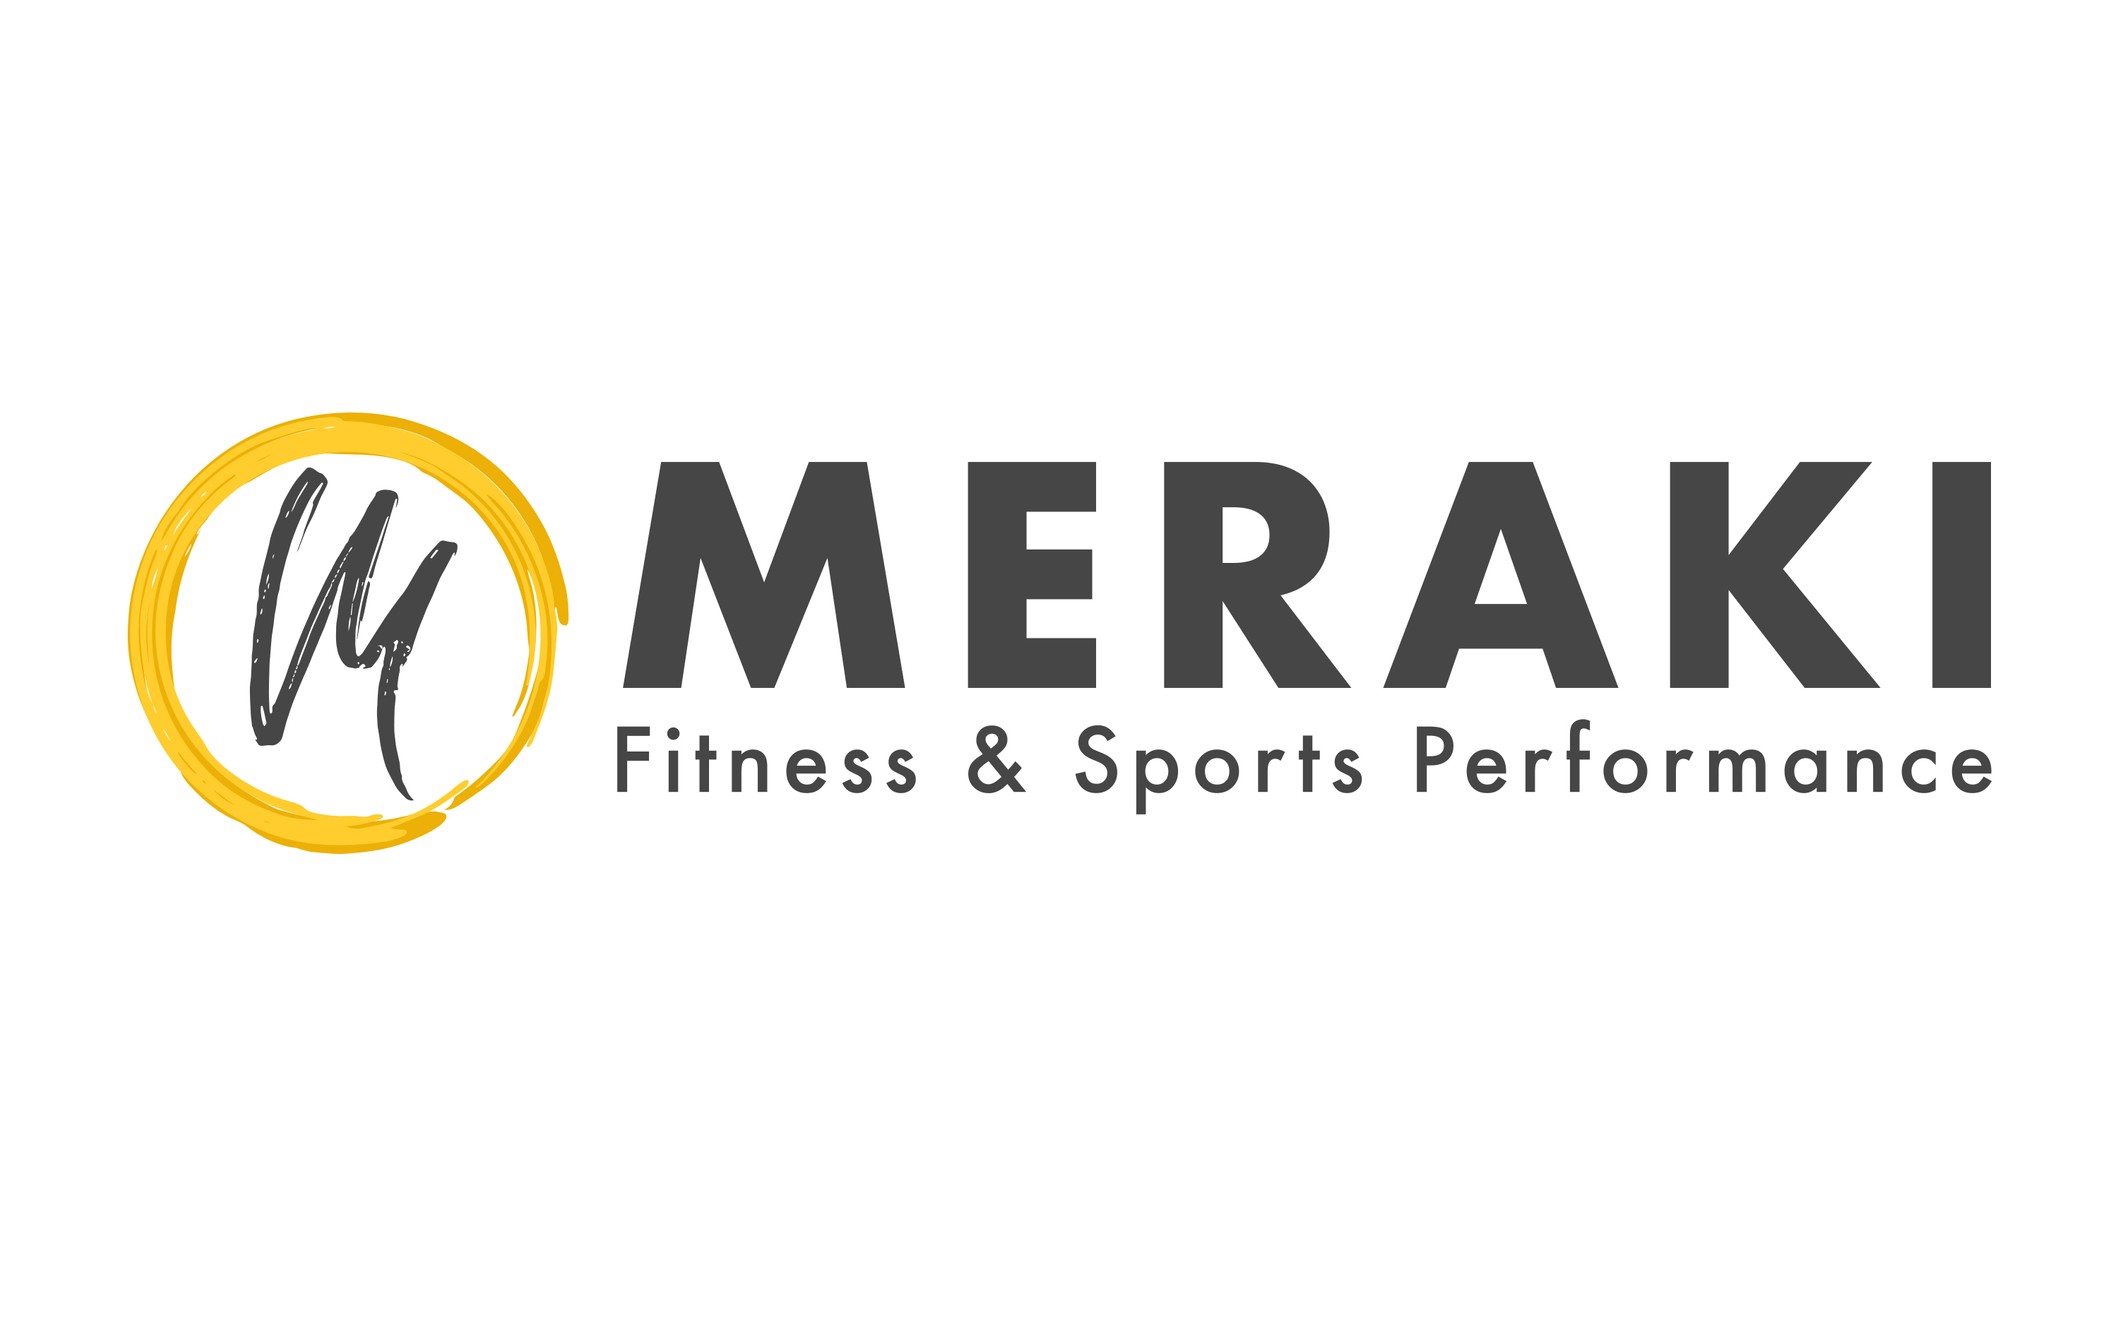 Meraki Fitness & Sports Performance